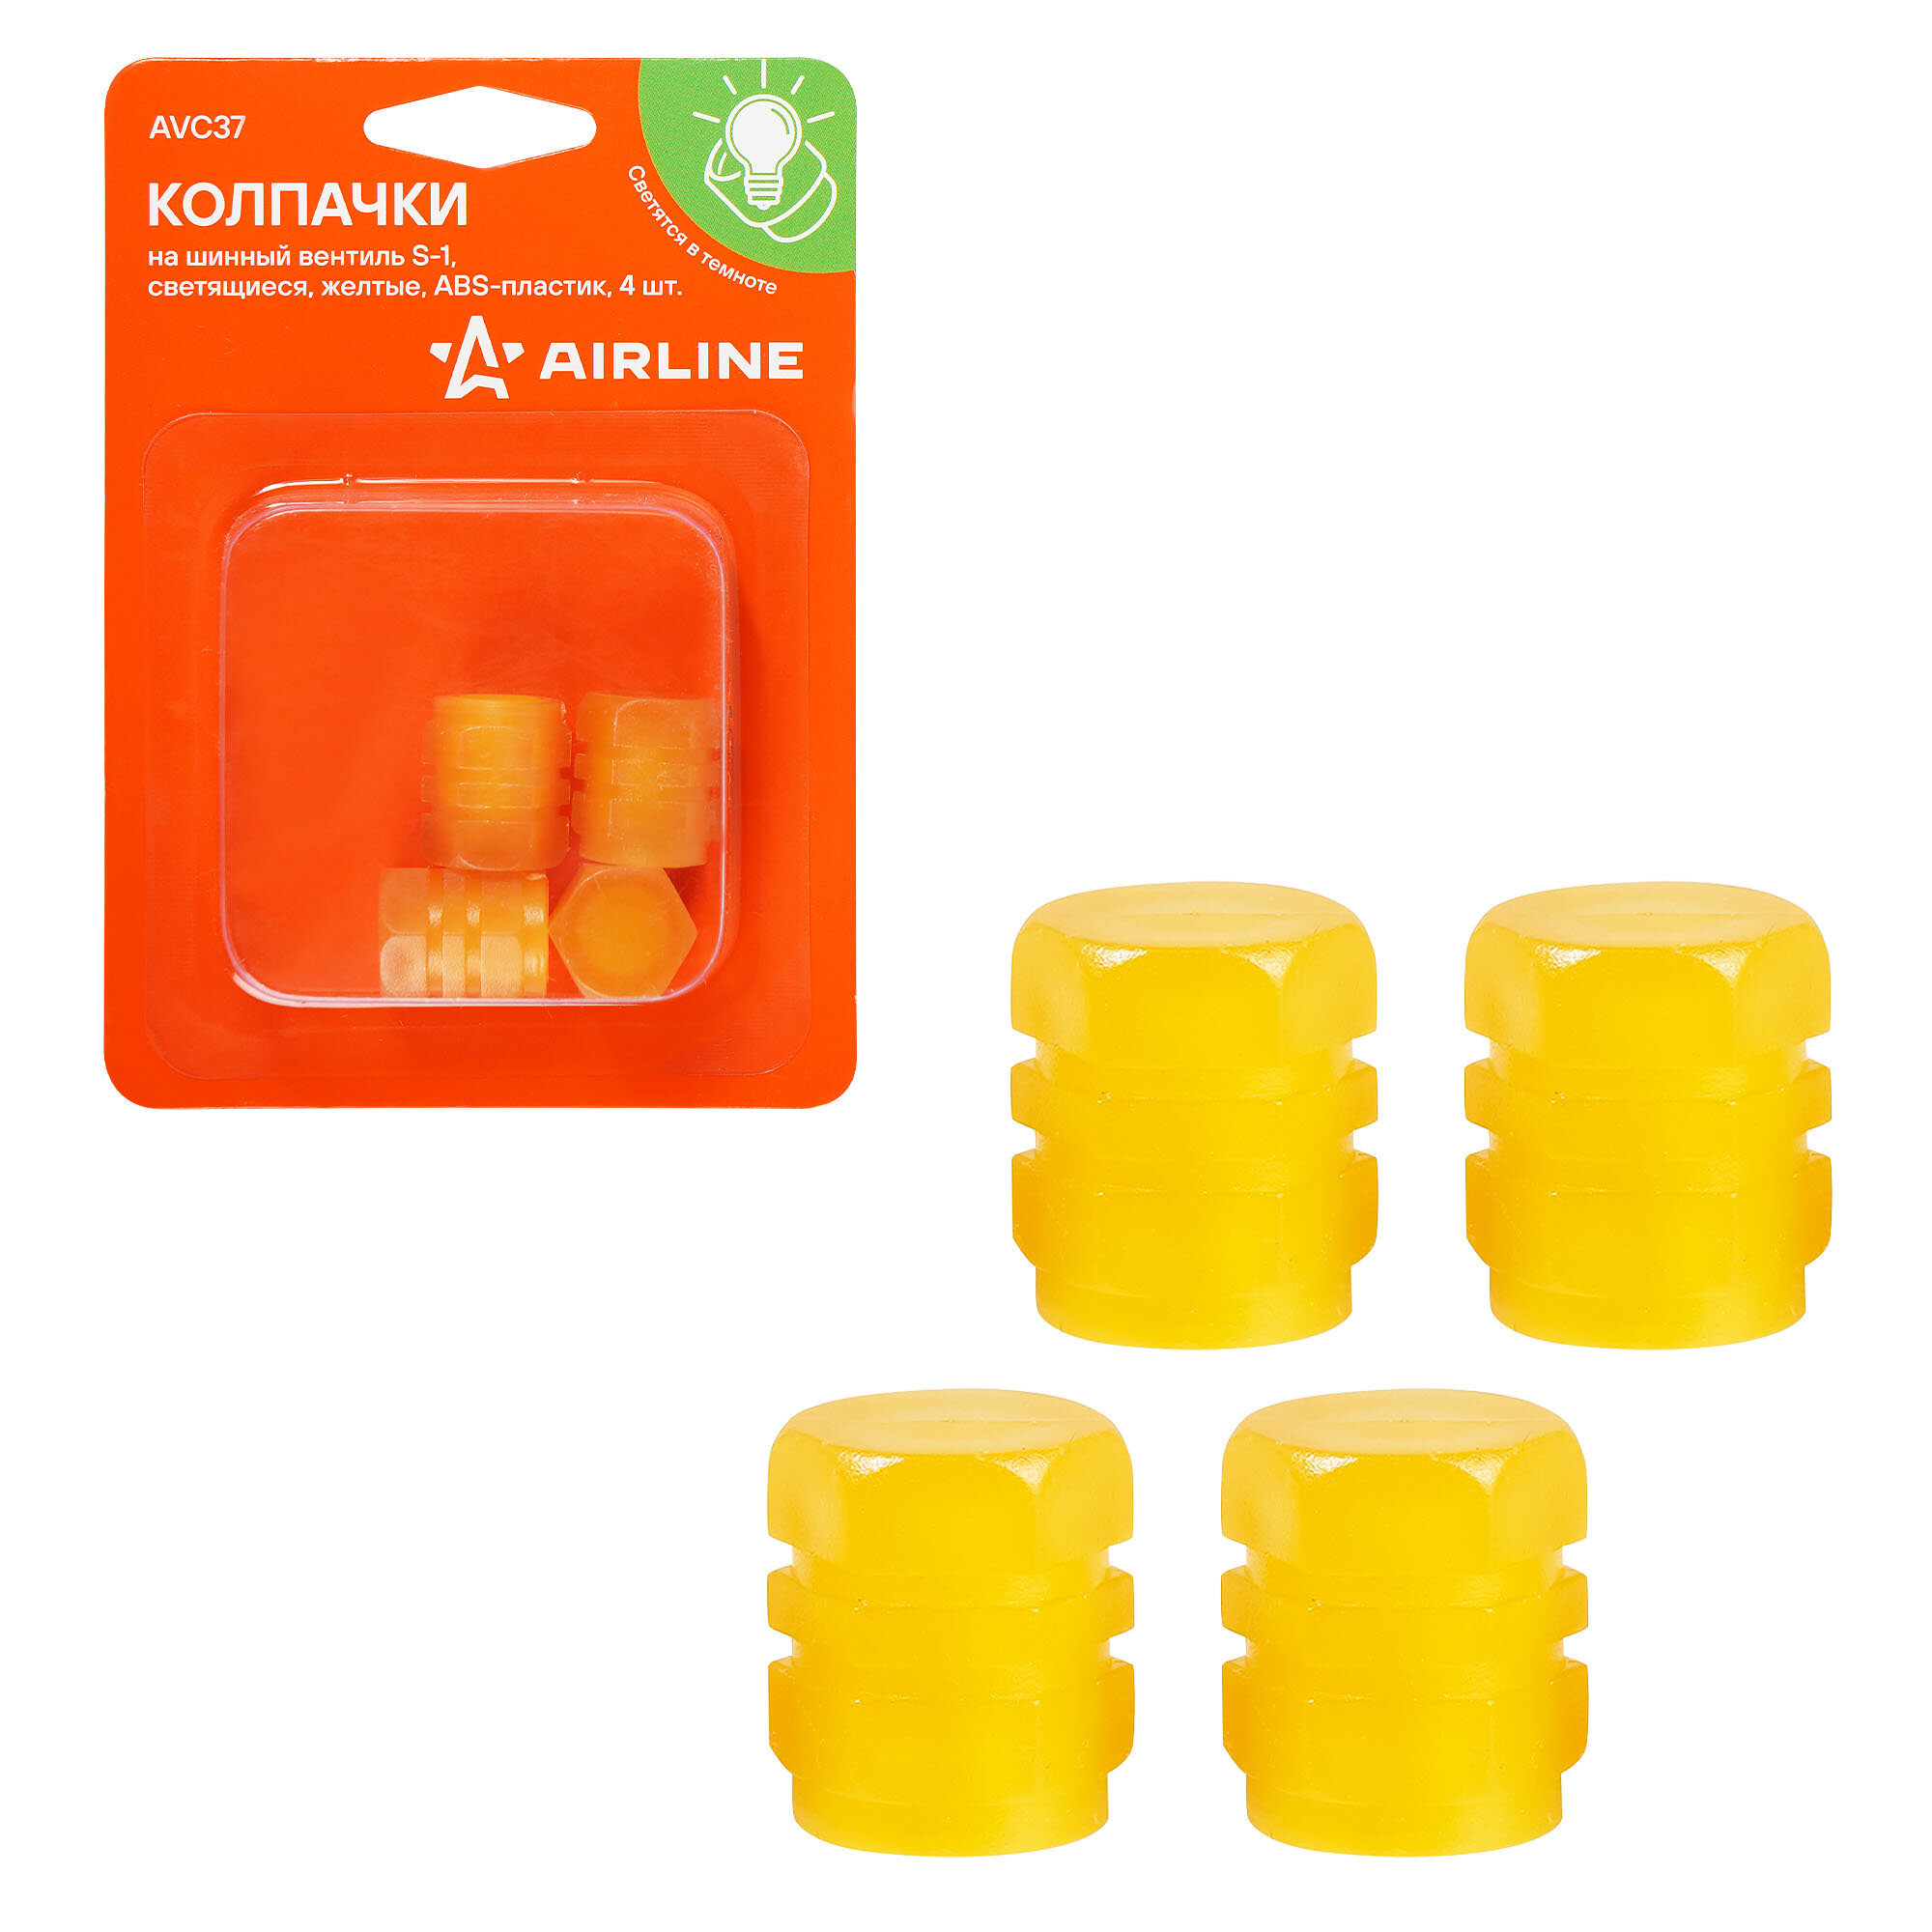 Колпачки на шинный вентиль S-1, светящиеся, желтые, ABS-пластик, 4 шт. AVC37 AIRLINE